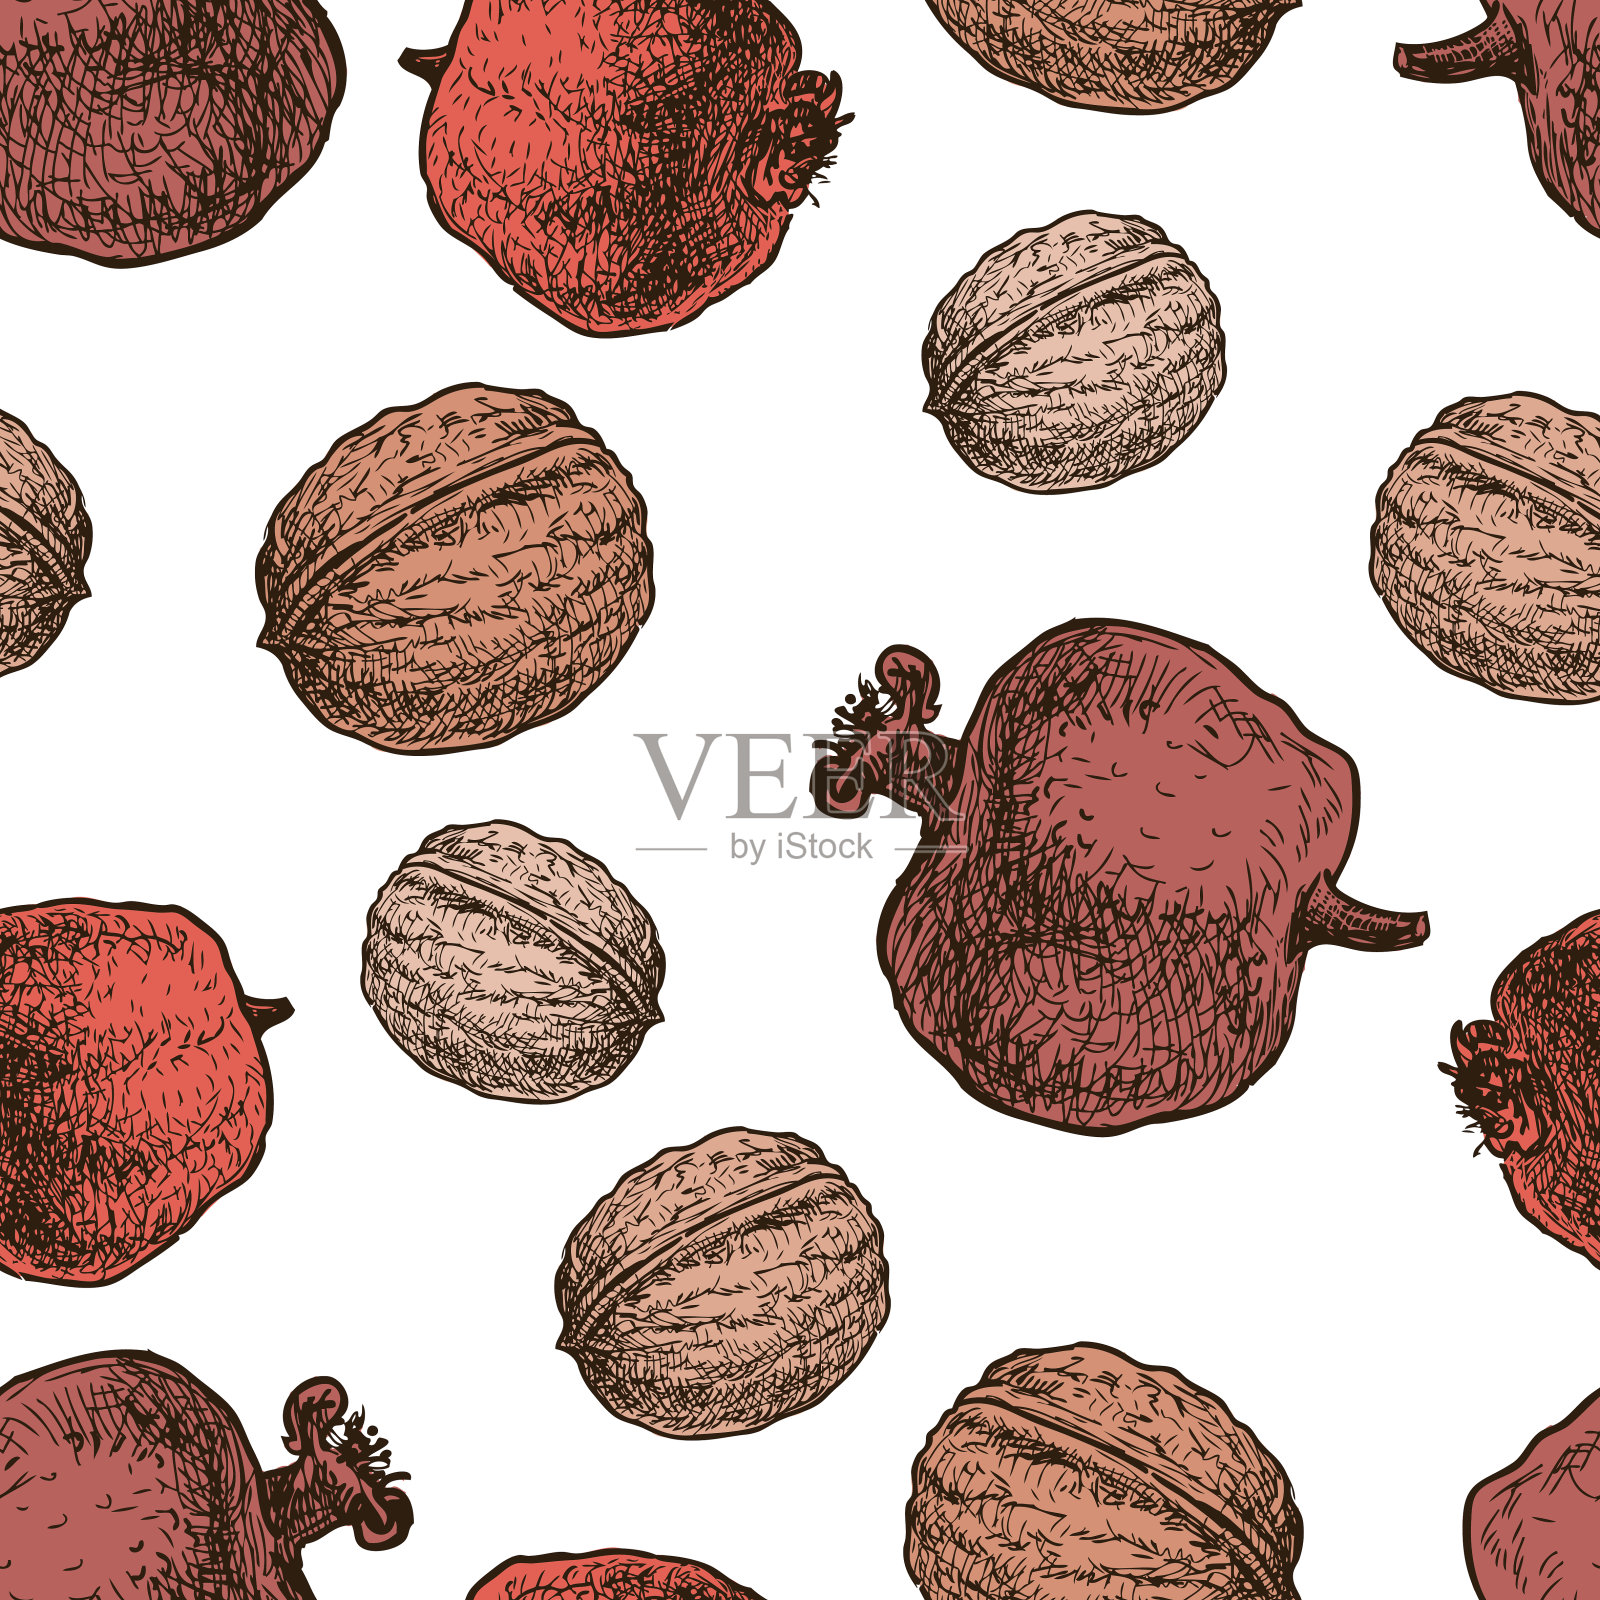 野生石榴和核桃的果实图案插画图片素材